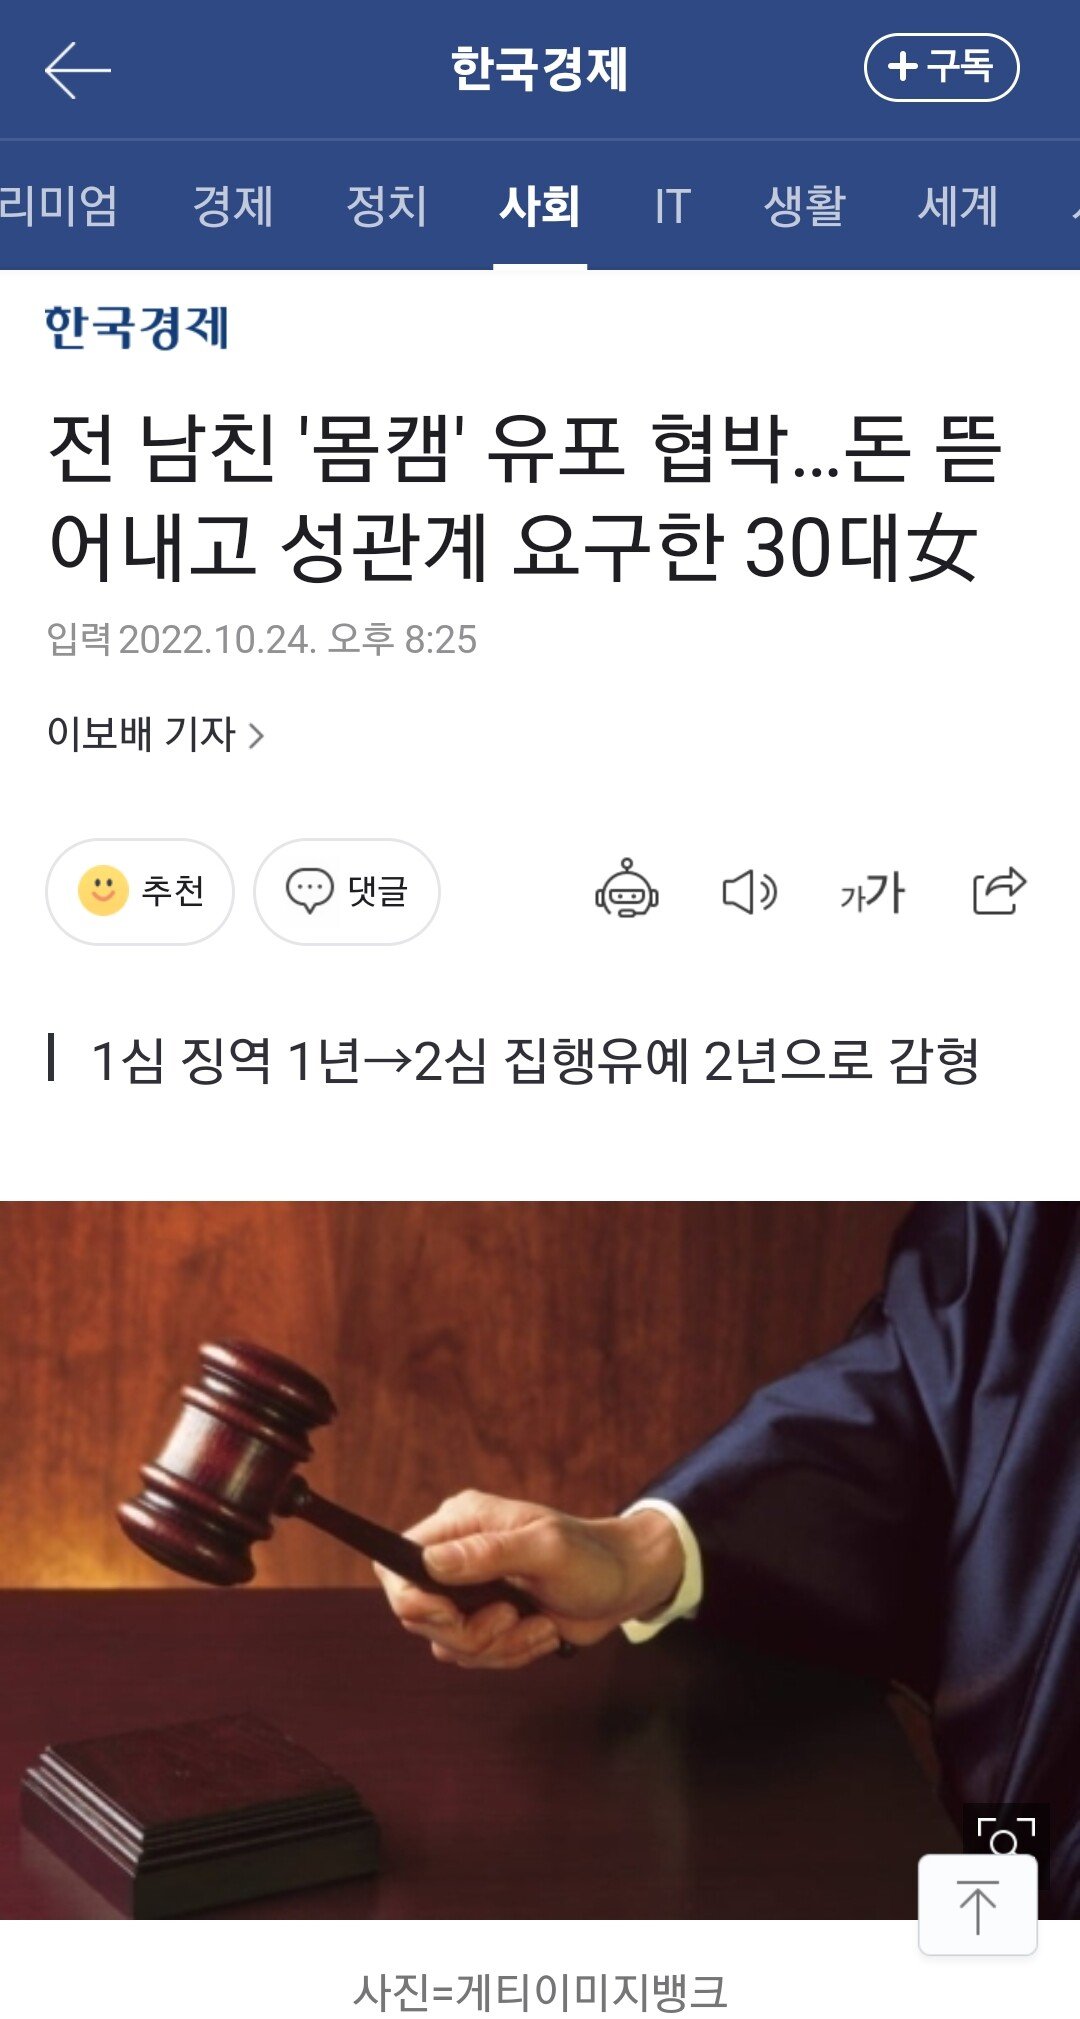 전남친 몸캠 유포 협박 + 성관계,금품 요구한 30대 여성.gisa